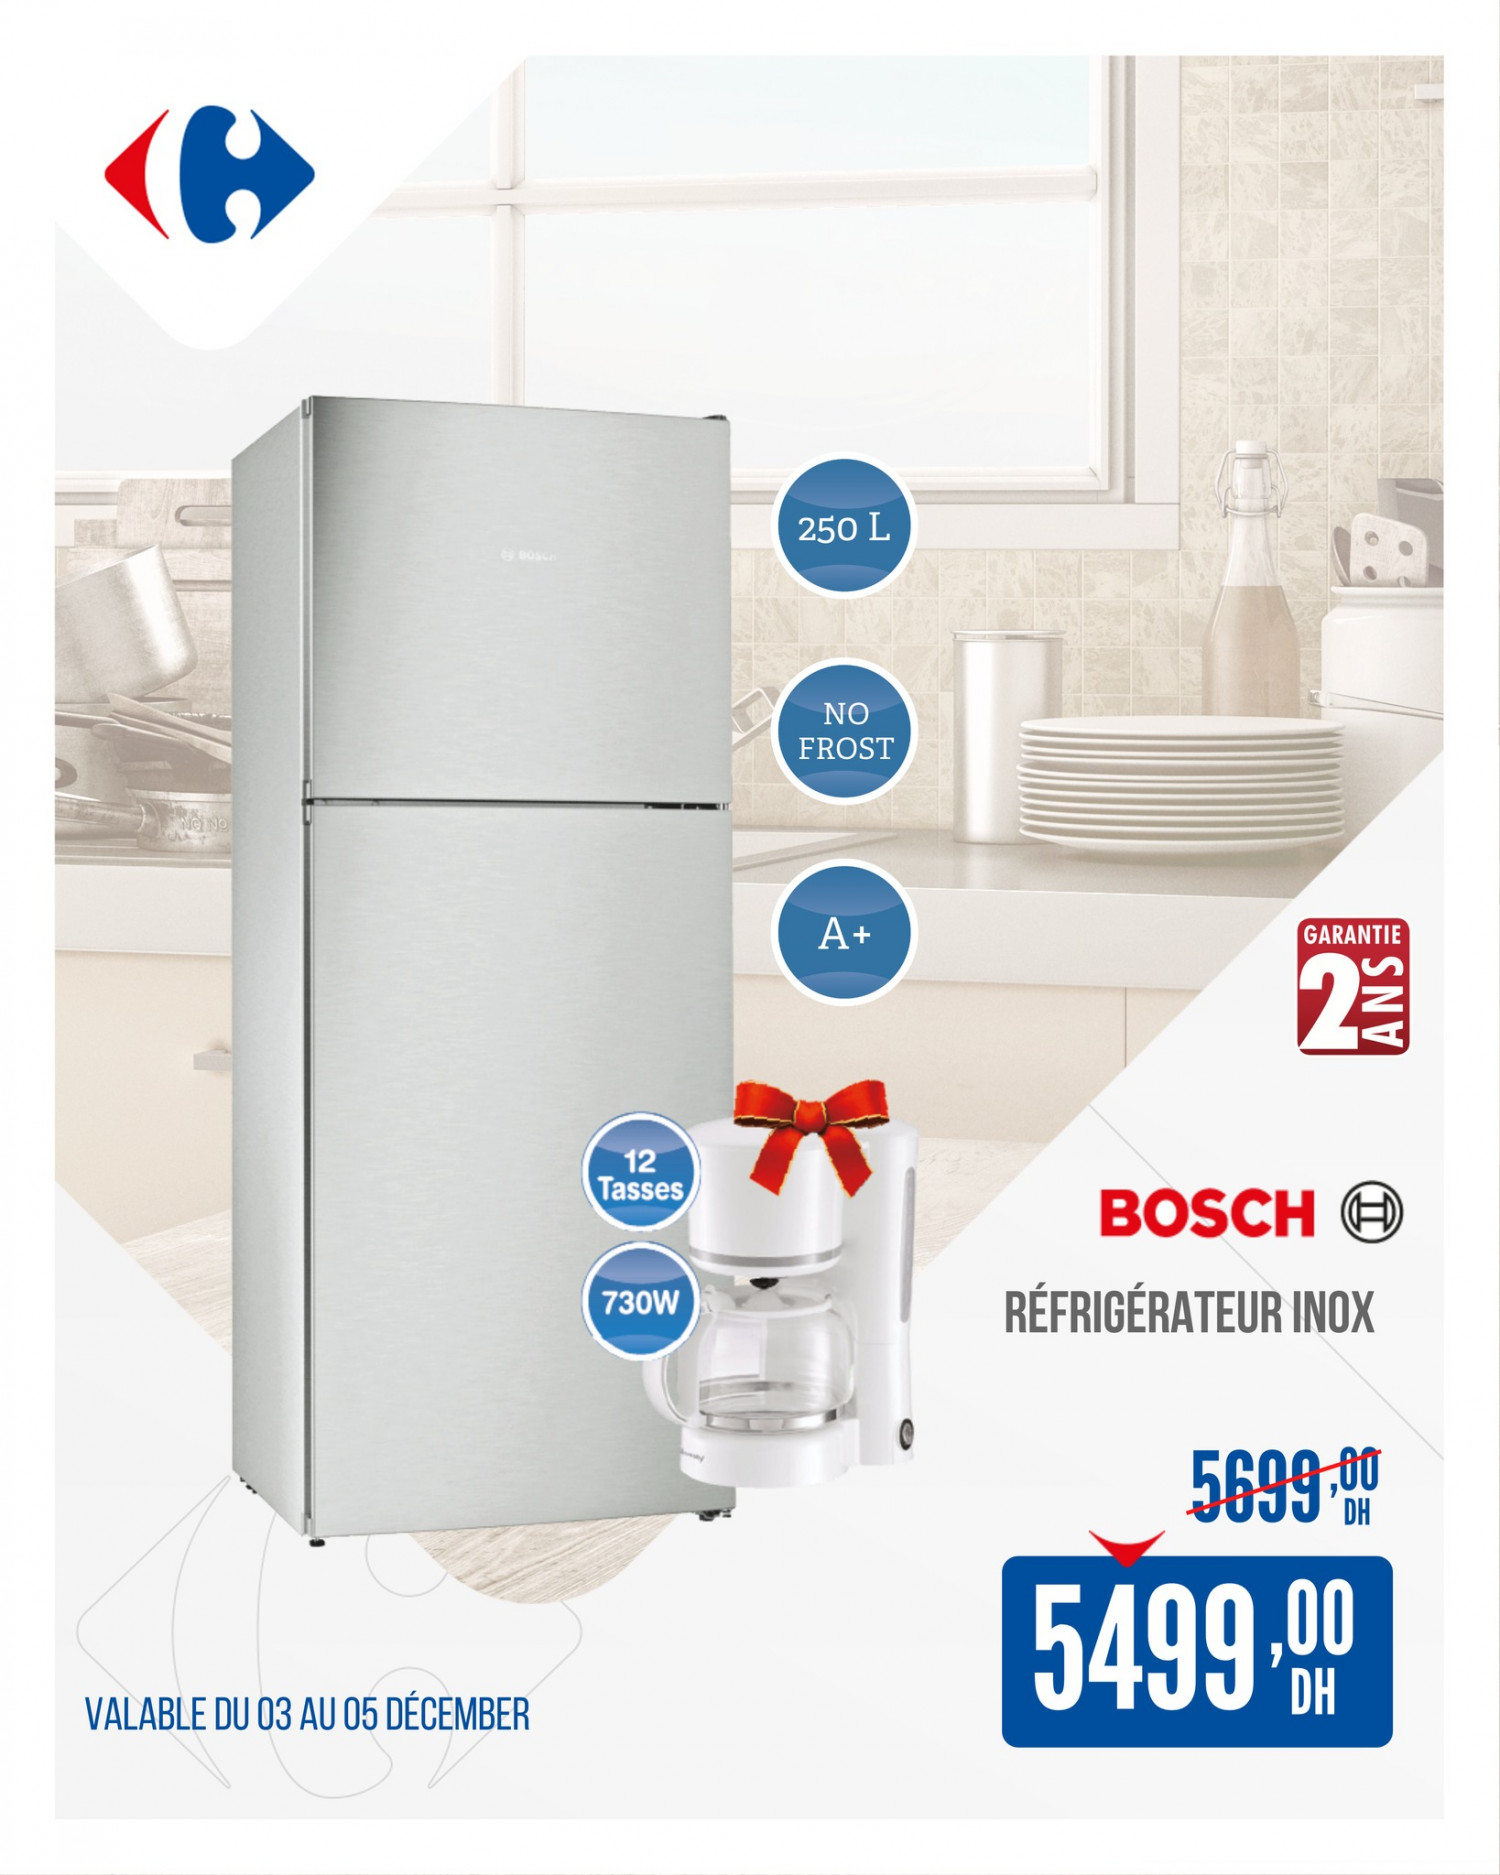 refrigerateur Bosch carrefour promo 3-5 decembre